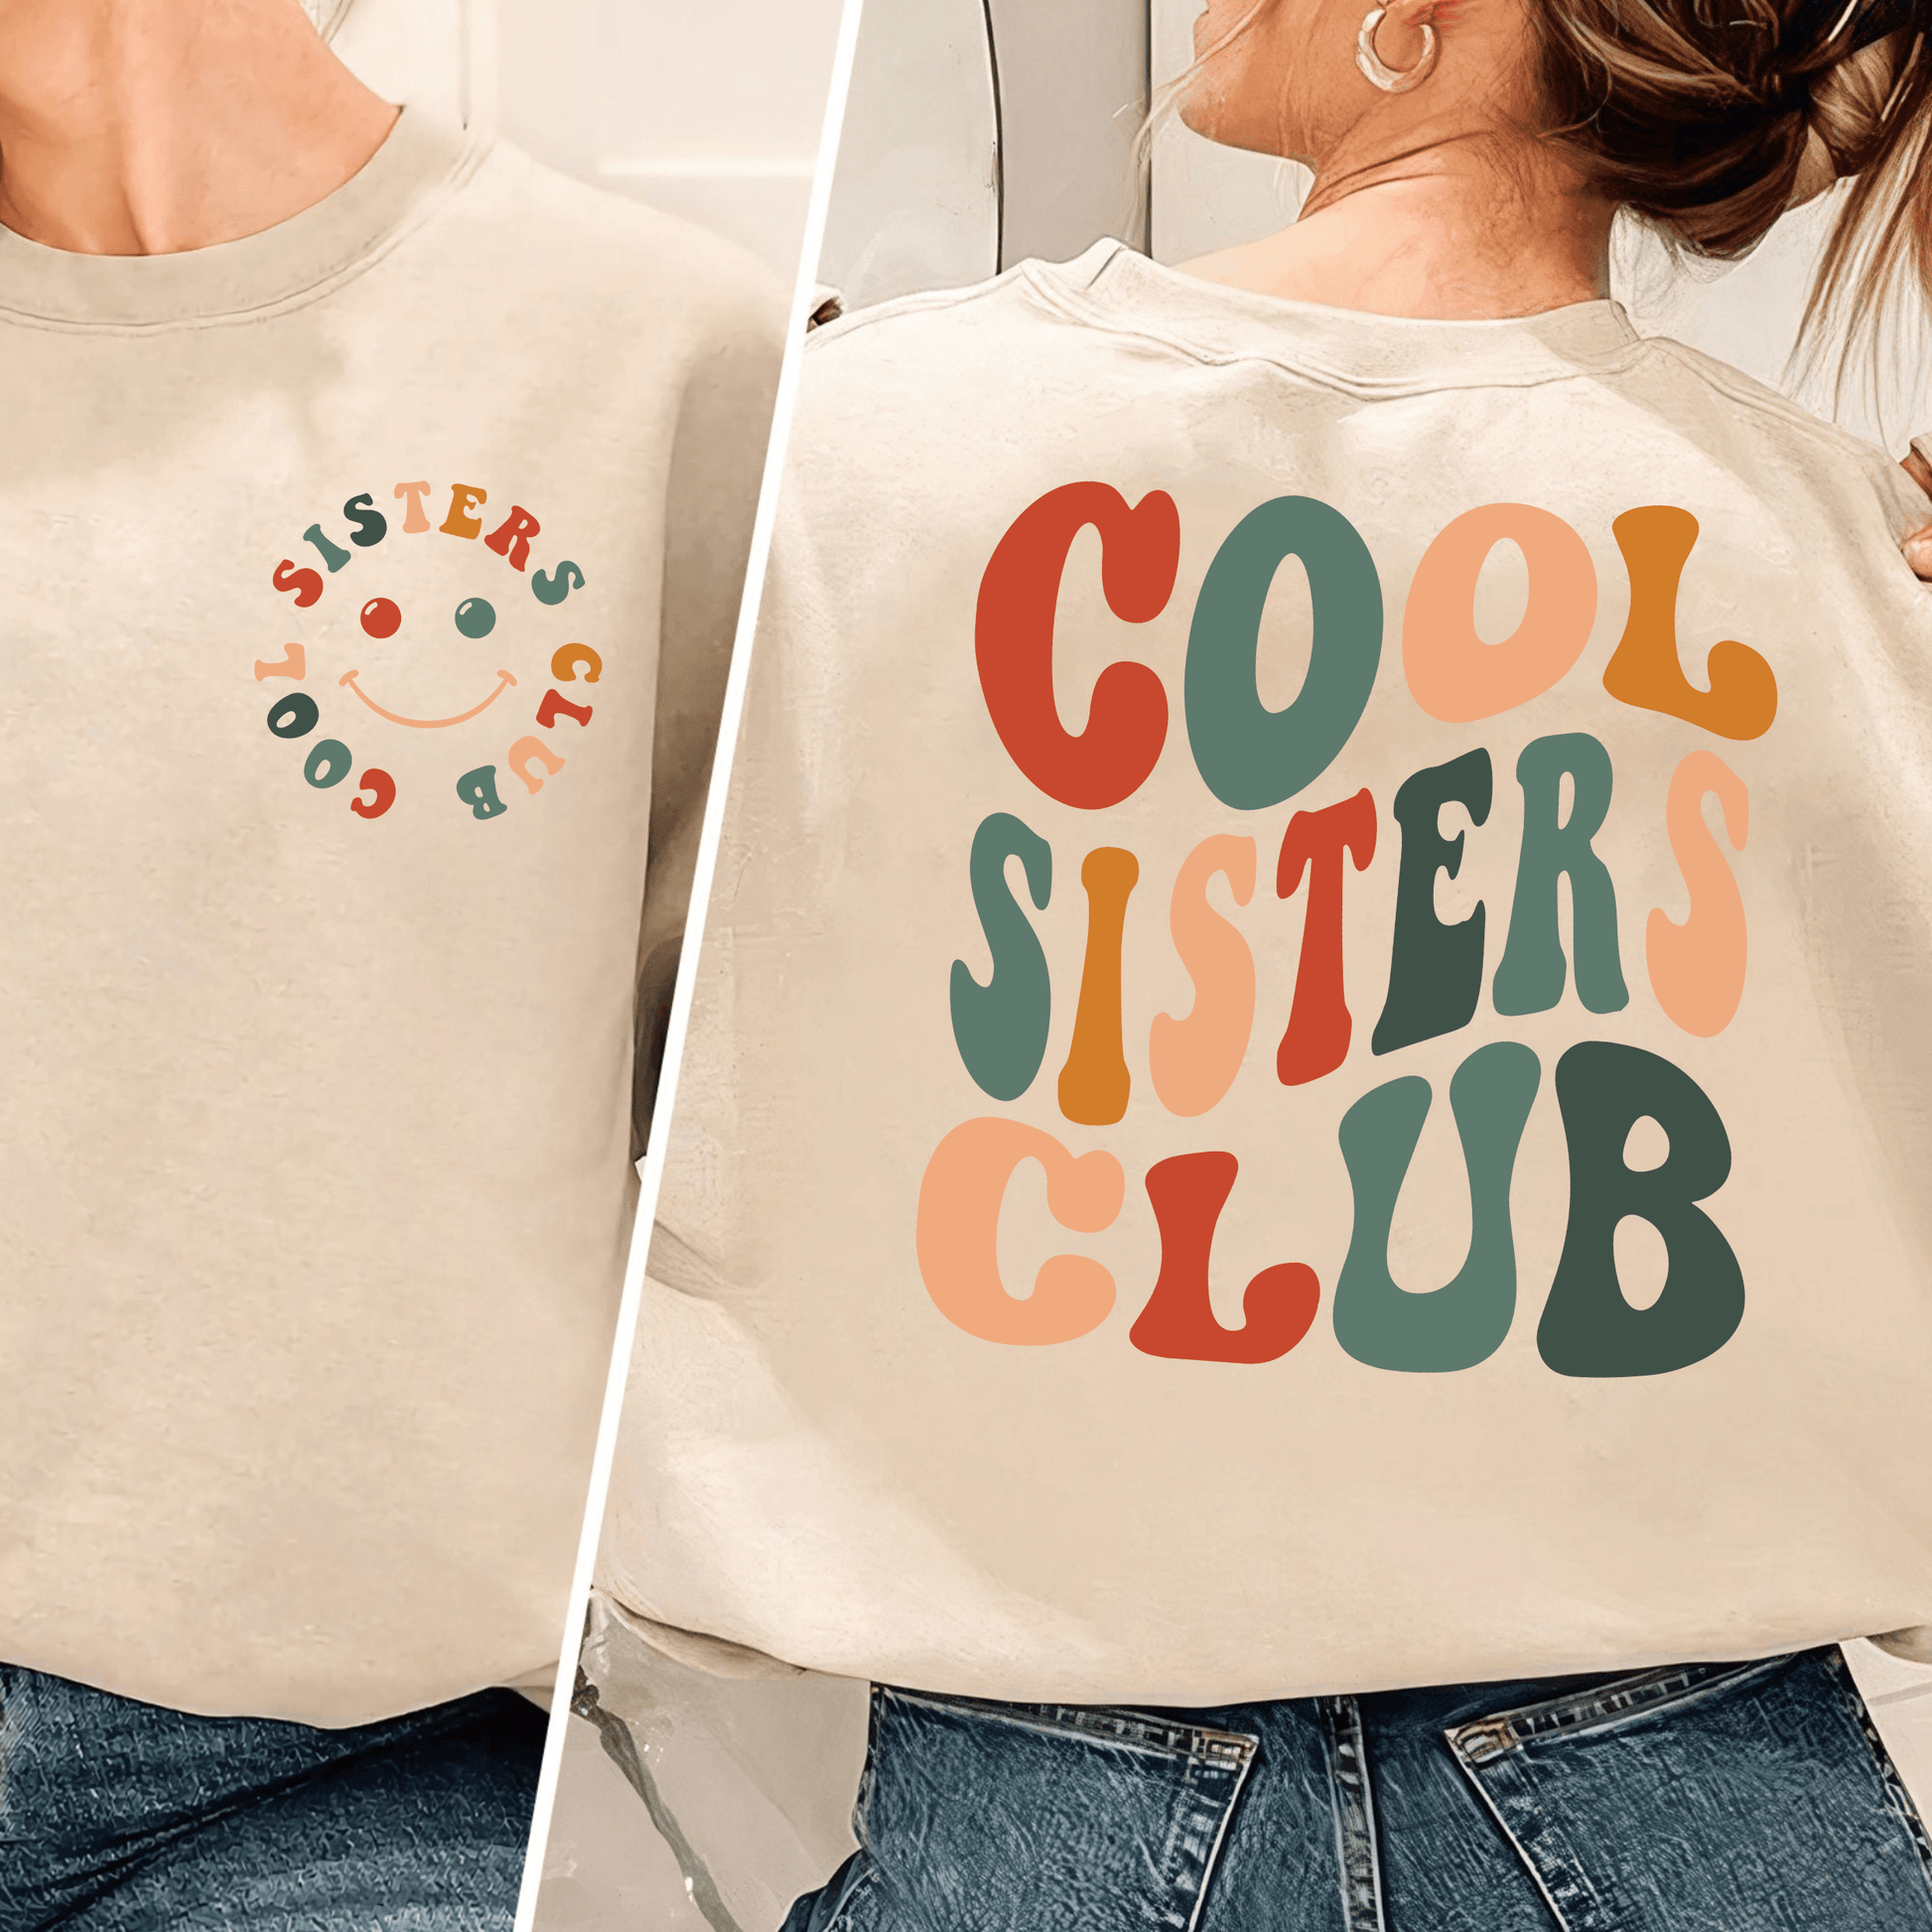 Geschwistergeist - 'Cool Sisters Club' Gemütliche Kollektion - GiftHaus